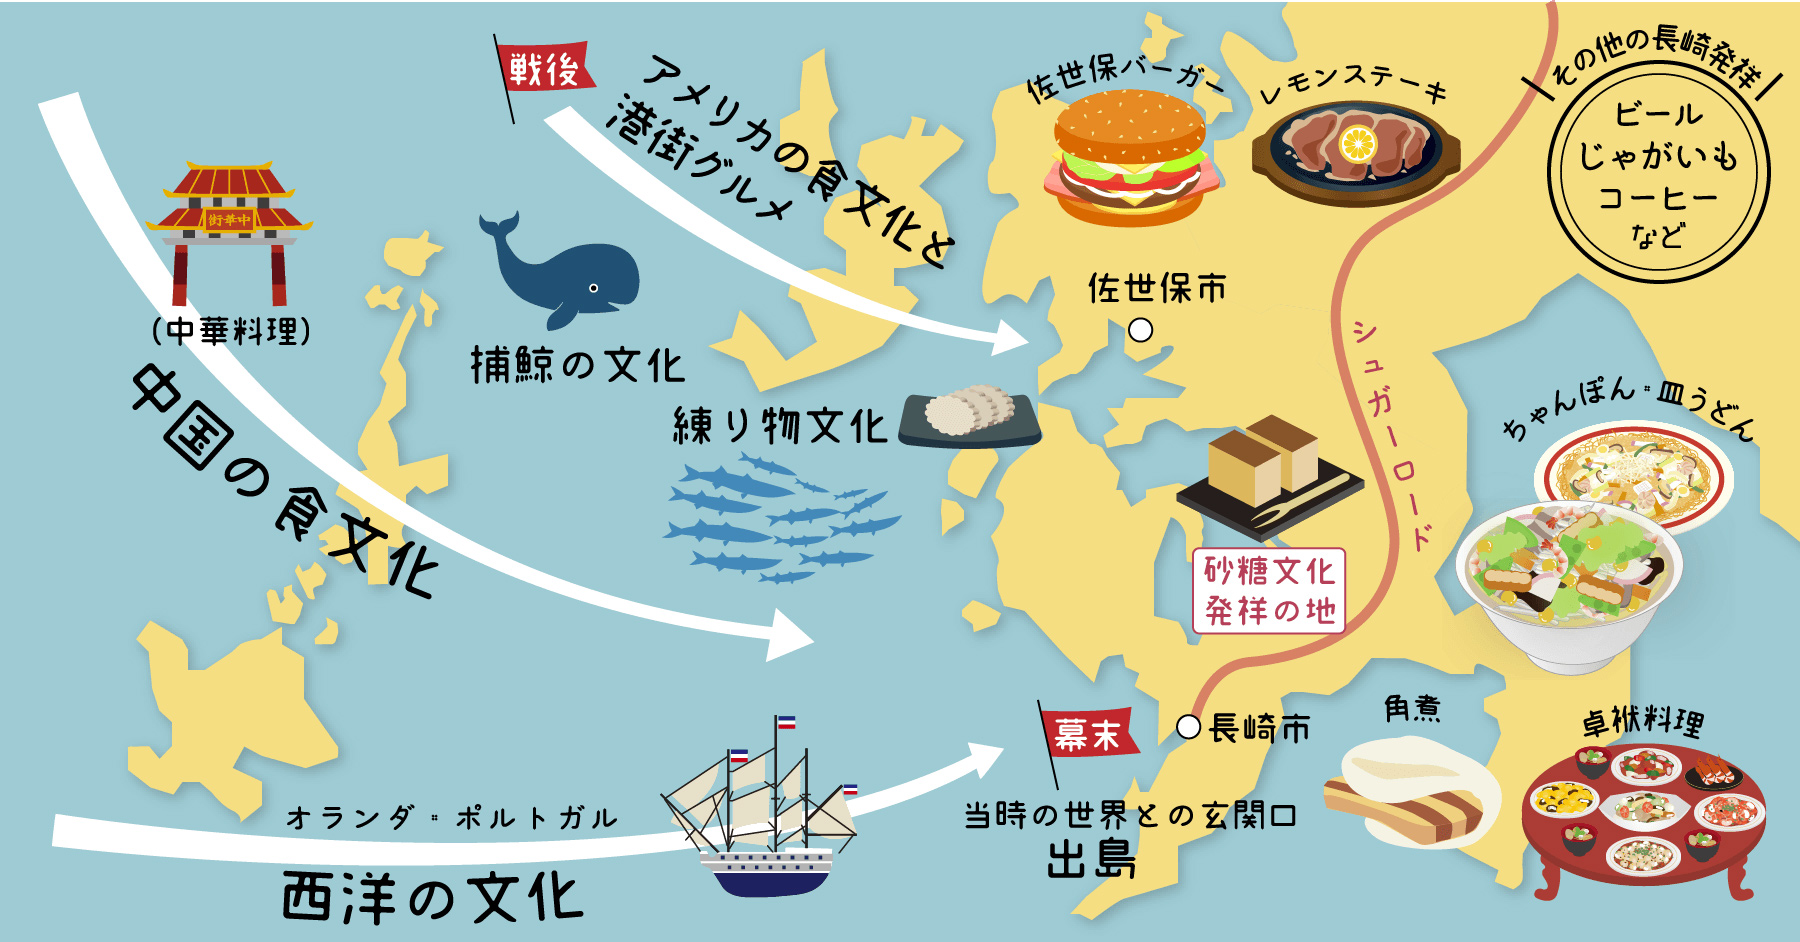 ながさき食文化マップ